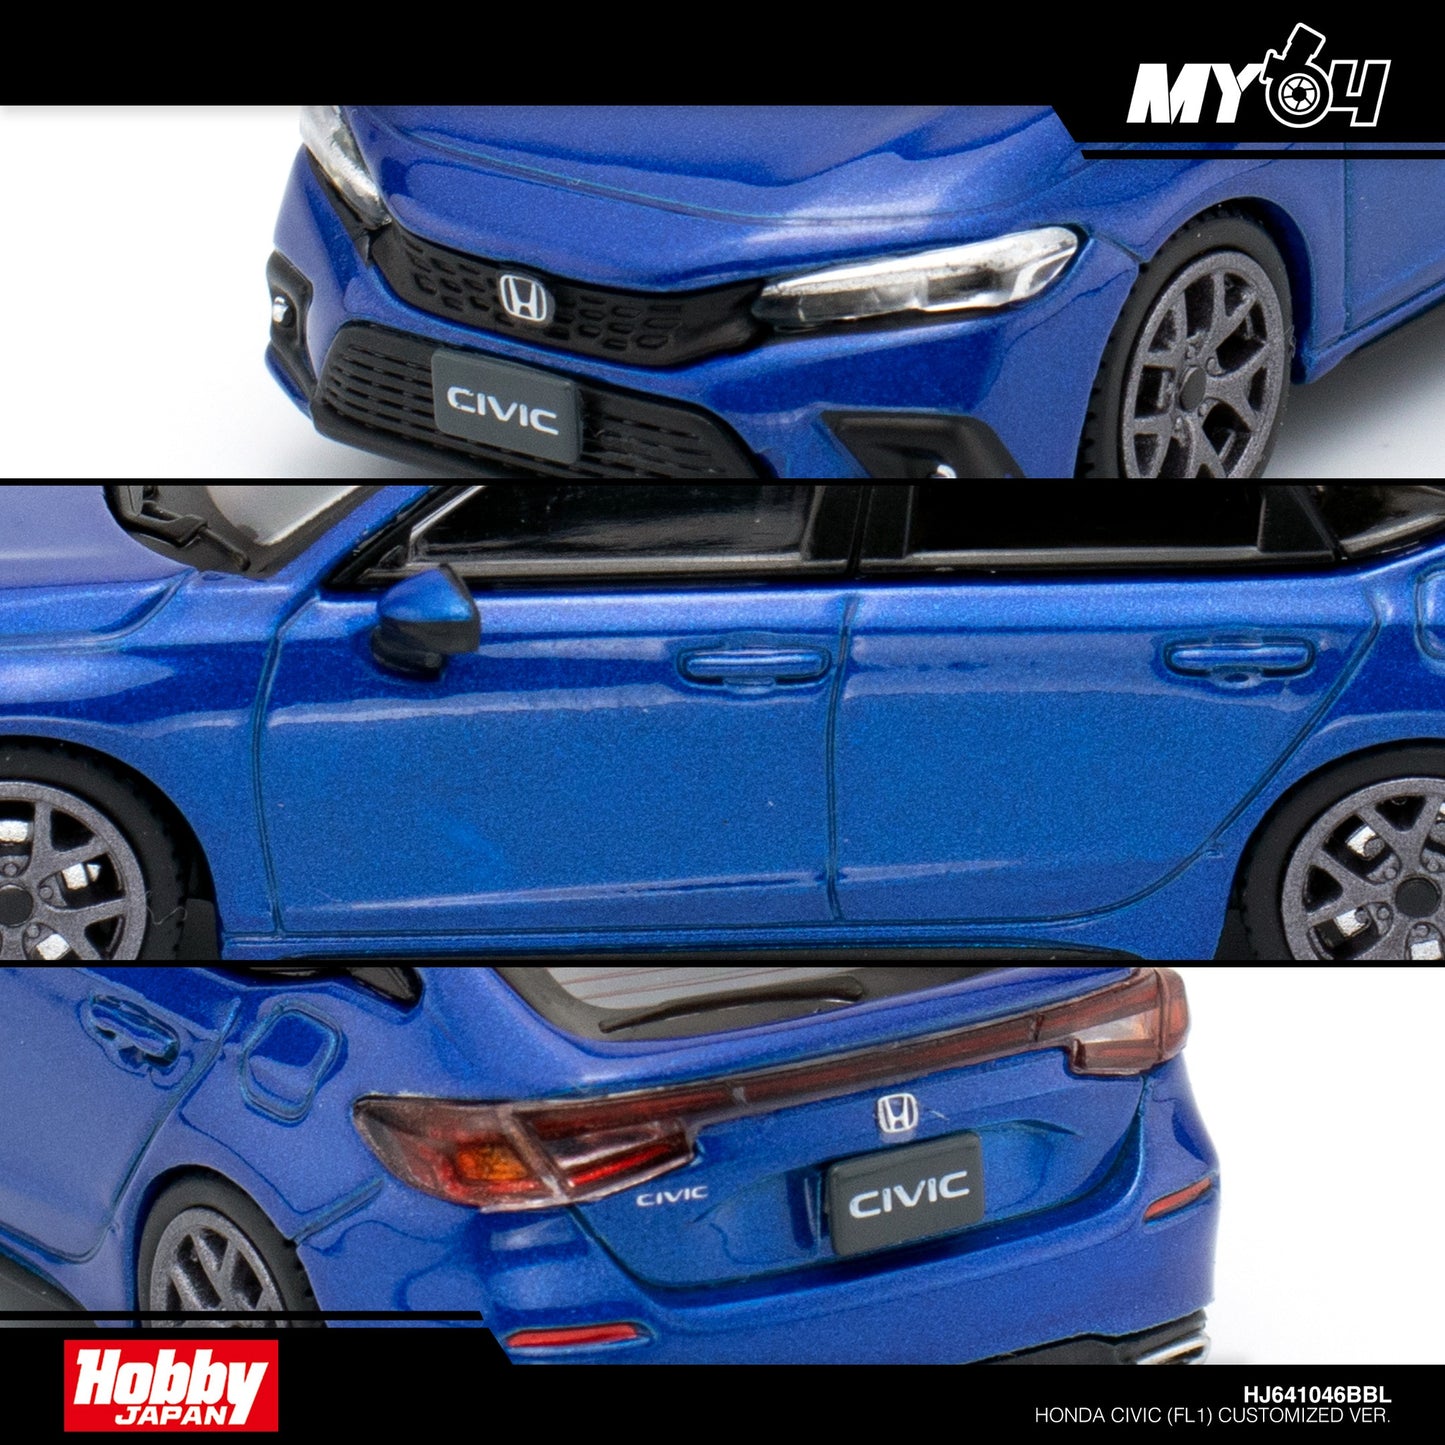 [Hobby Japan] Honda Civic (FL1) Customized Ver.